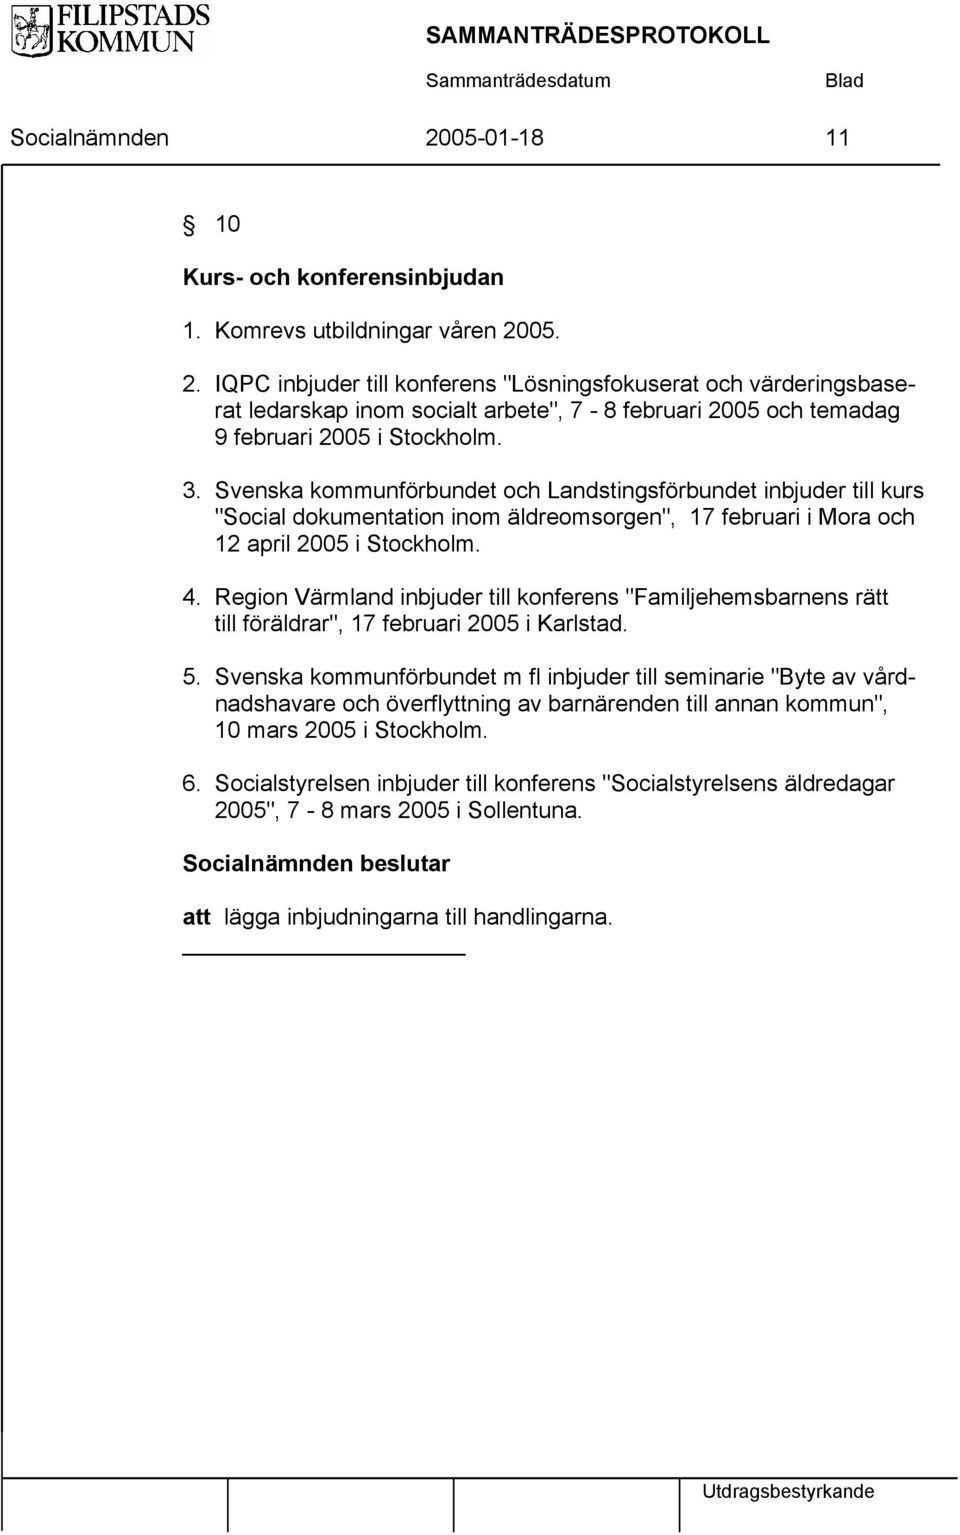 Region Värmland inbjuder till konferens "Familjehemsbarnens rätt till föräldrar", 17 februari 2005 i Karlstad. 5.